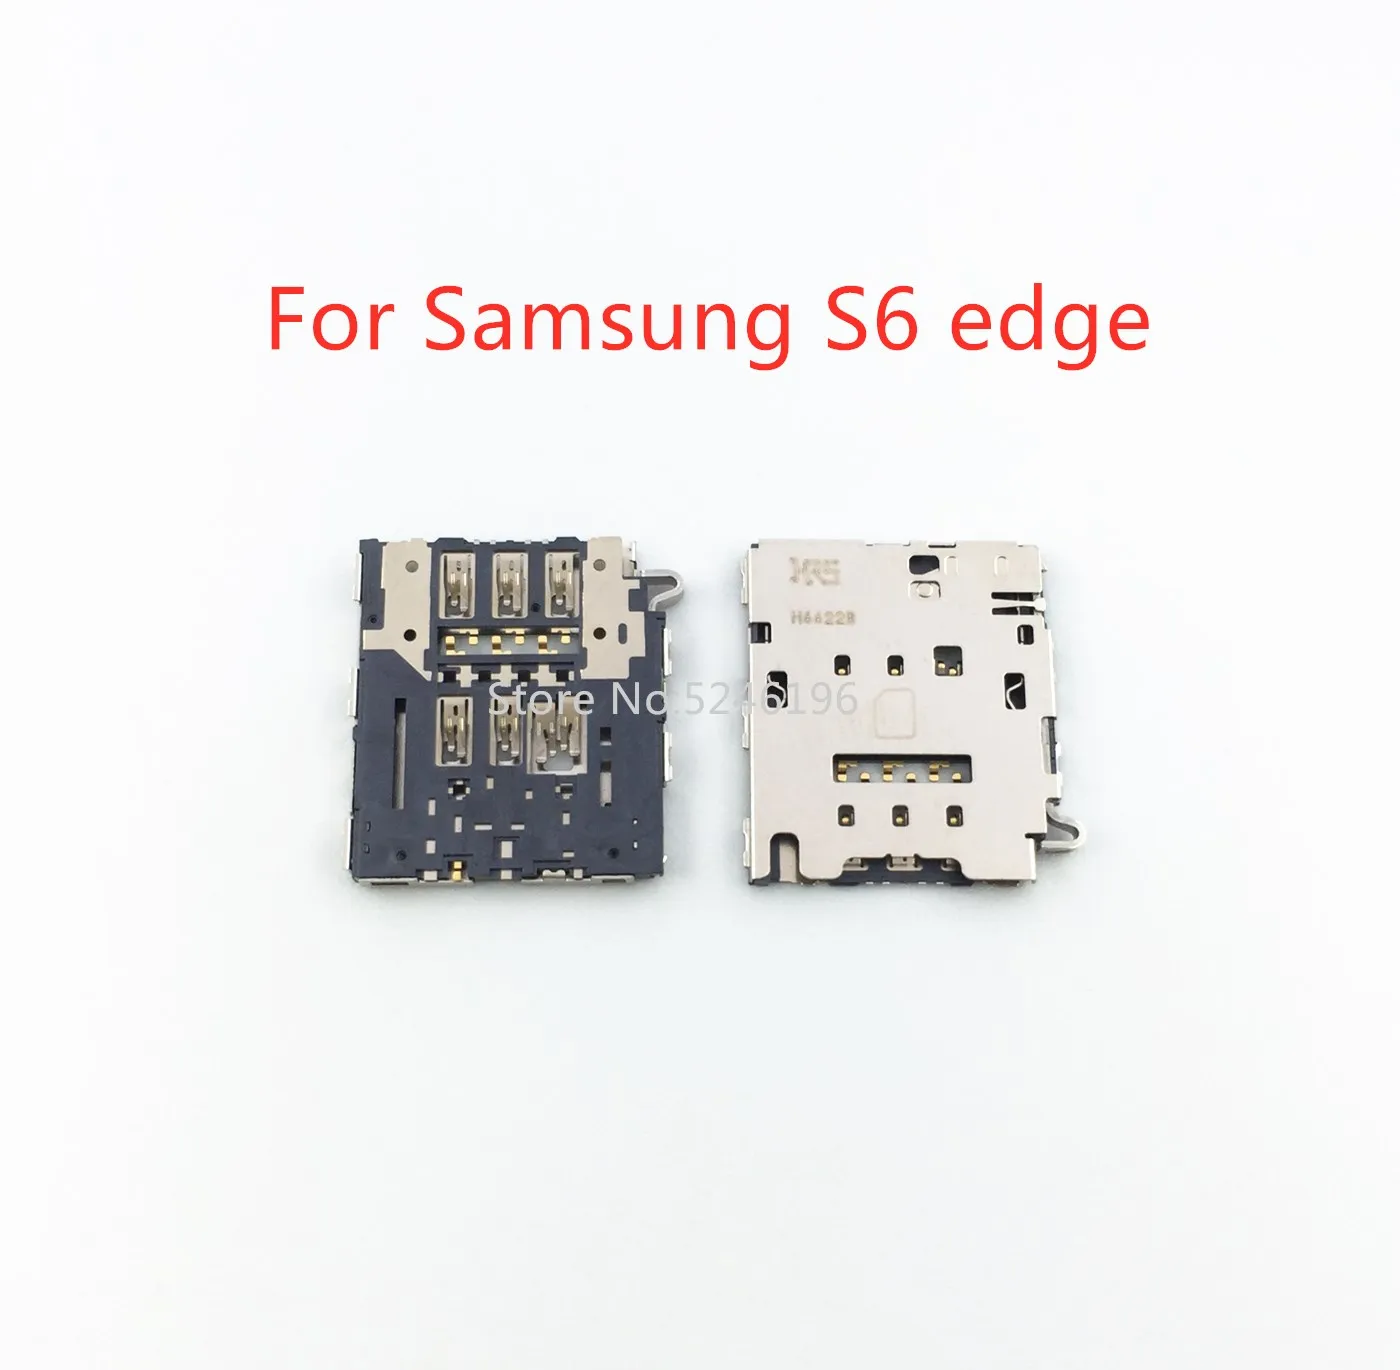 2-10pcs For Samsung Galaxy S6 edge G925F G925I G9250 G925A/V/T/P G925S/K/L Sim Card Reader Tray Card Holder Slot Repair Parts